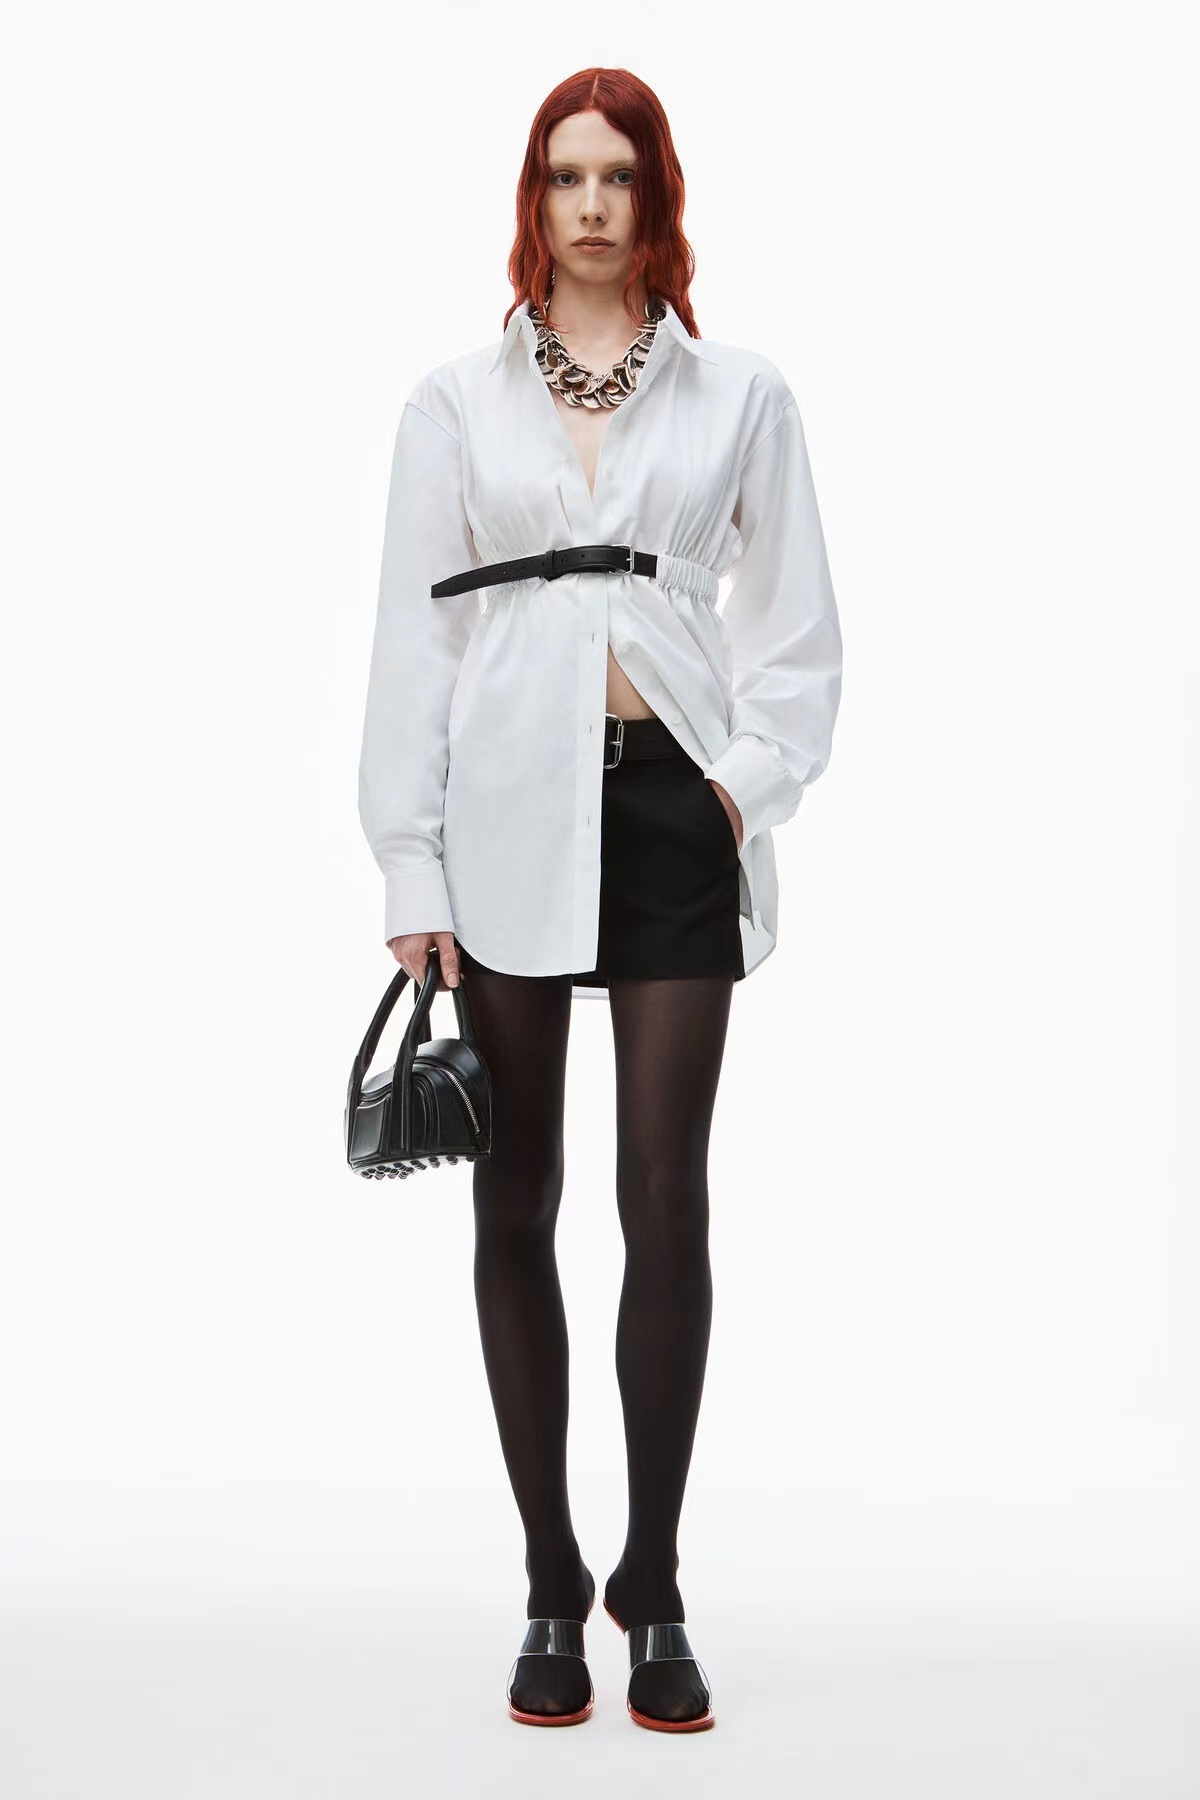 新款！最新AW 24N 腰带收腰衬衫连衣裙。颜色：黑、白。尺码:SML。Pzldbd。